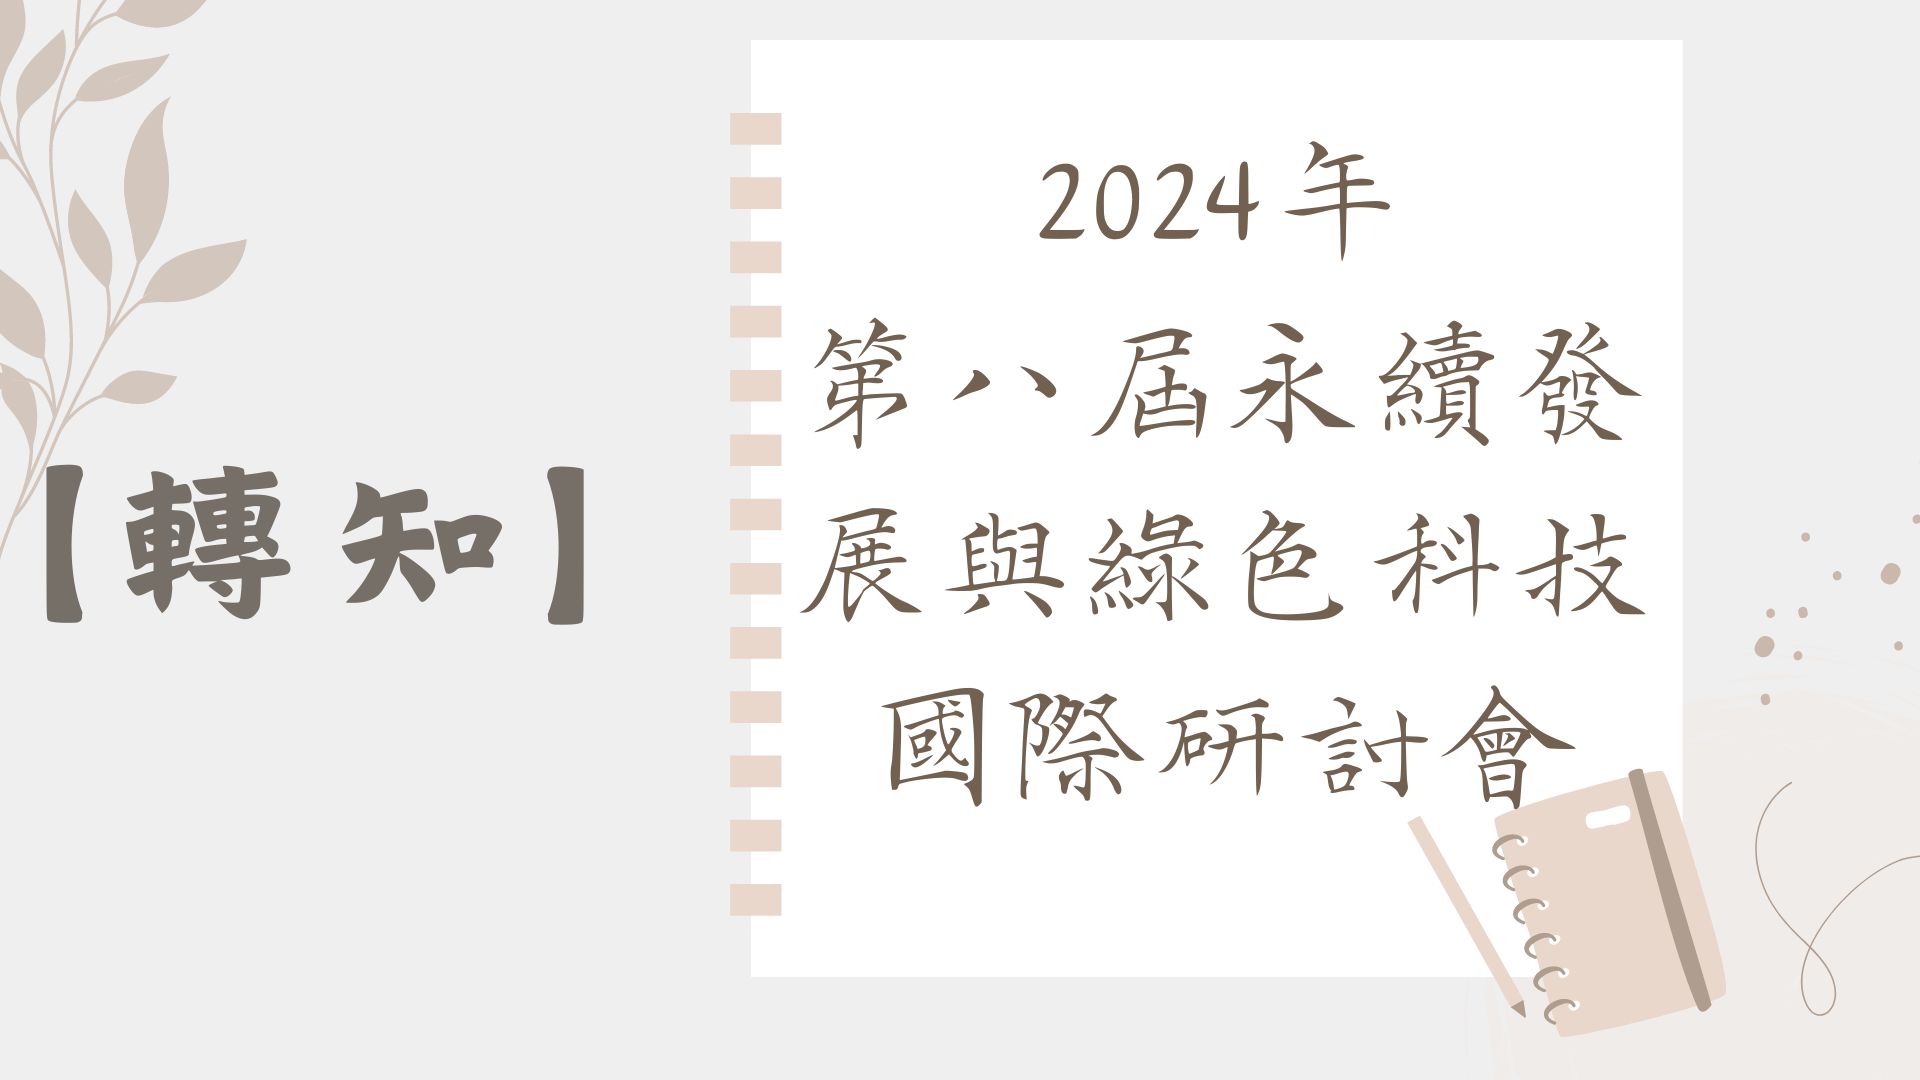 【轉知】2024年 第八屆永續發展與綠色科技國際研討會(第二階段徵稿)